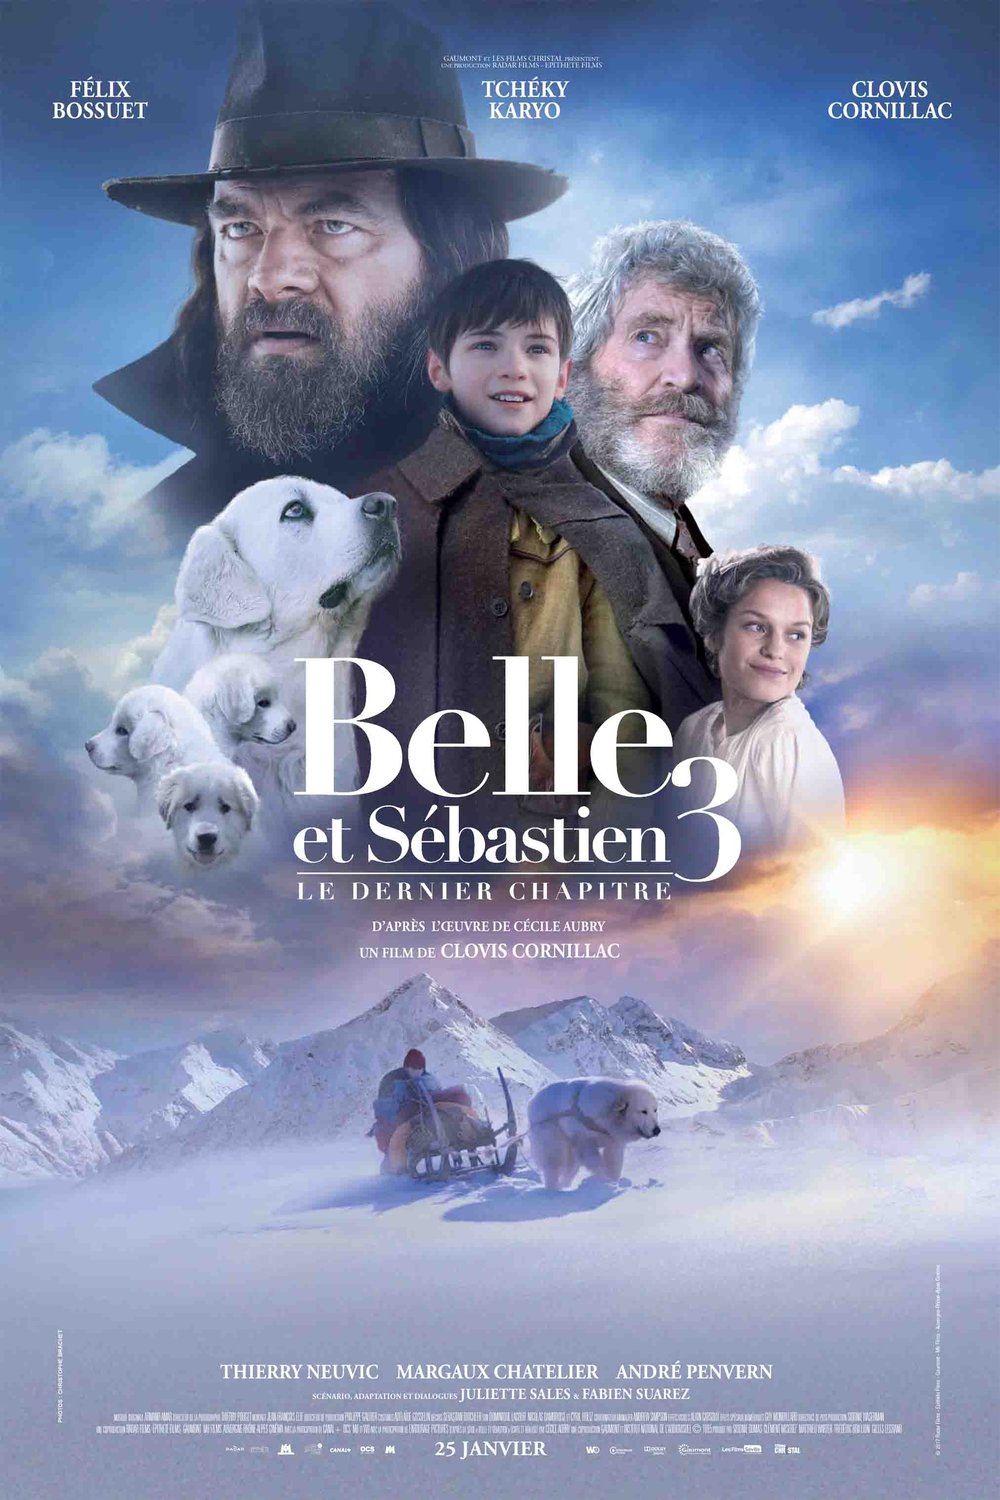 Poster of the movie Belle et Sébastien 3: Le dernier chapitre